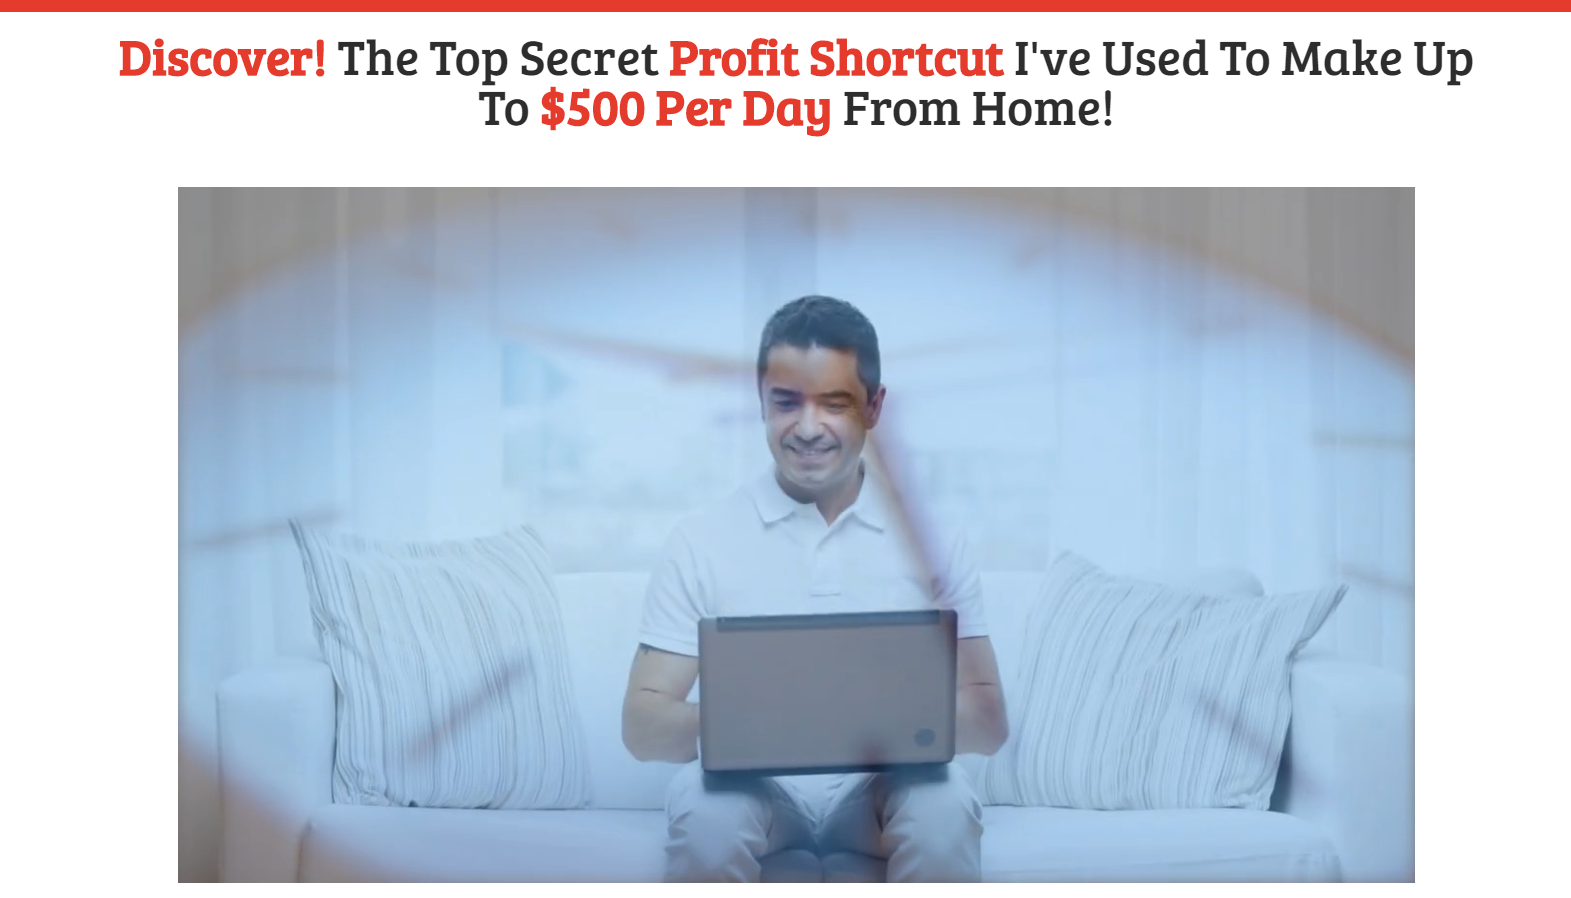 the profit shortcut page